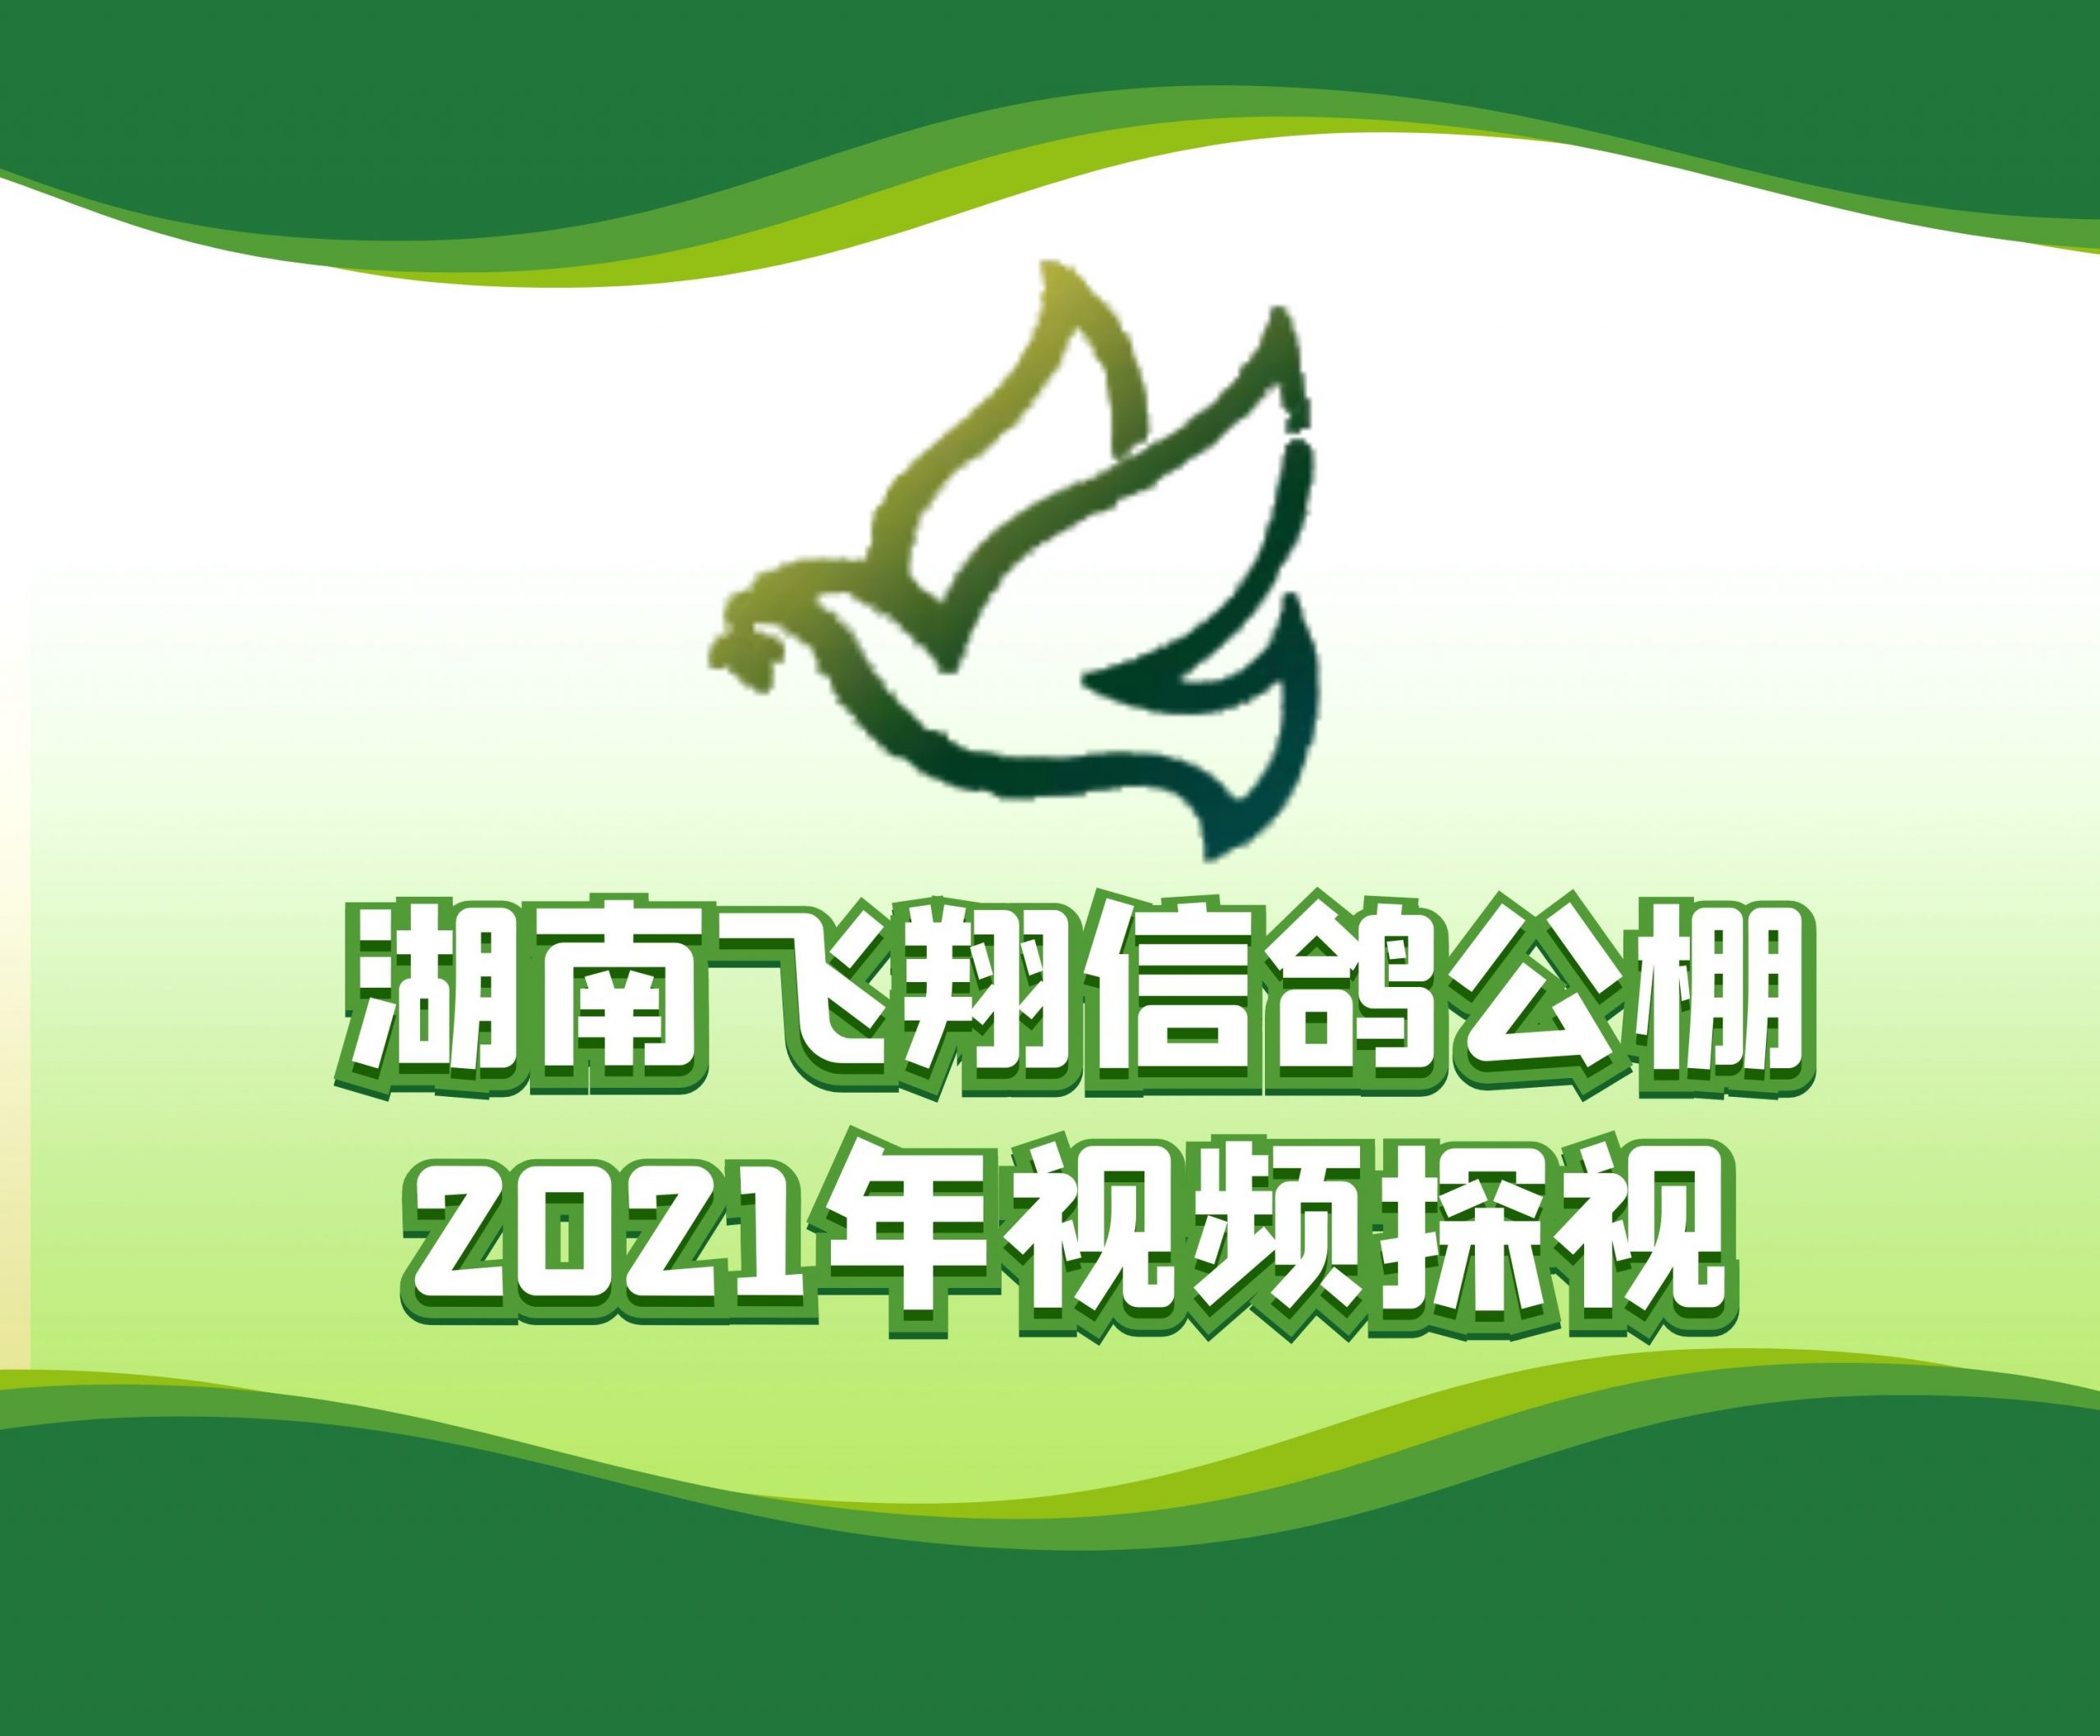 龙城赛鸽俱乐部谭志超-2021-32-0524595